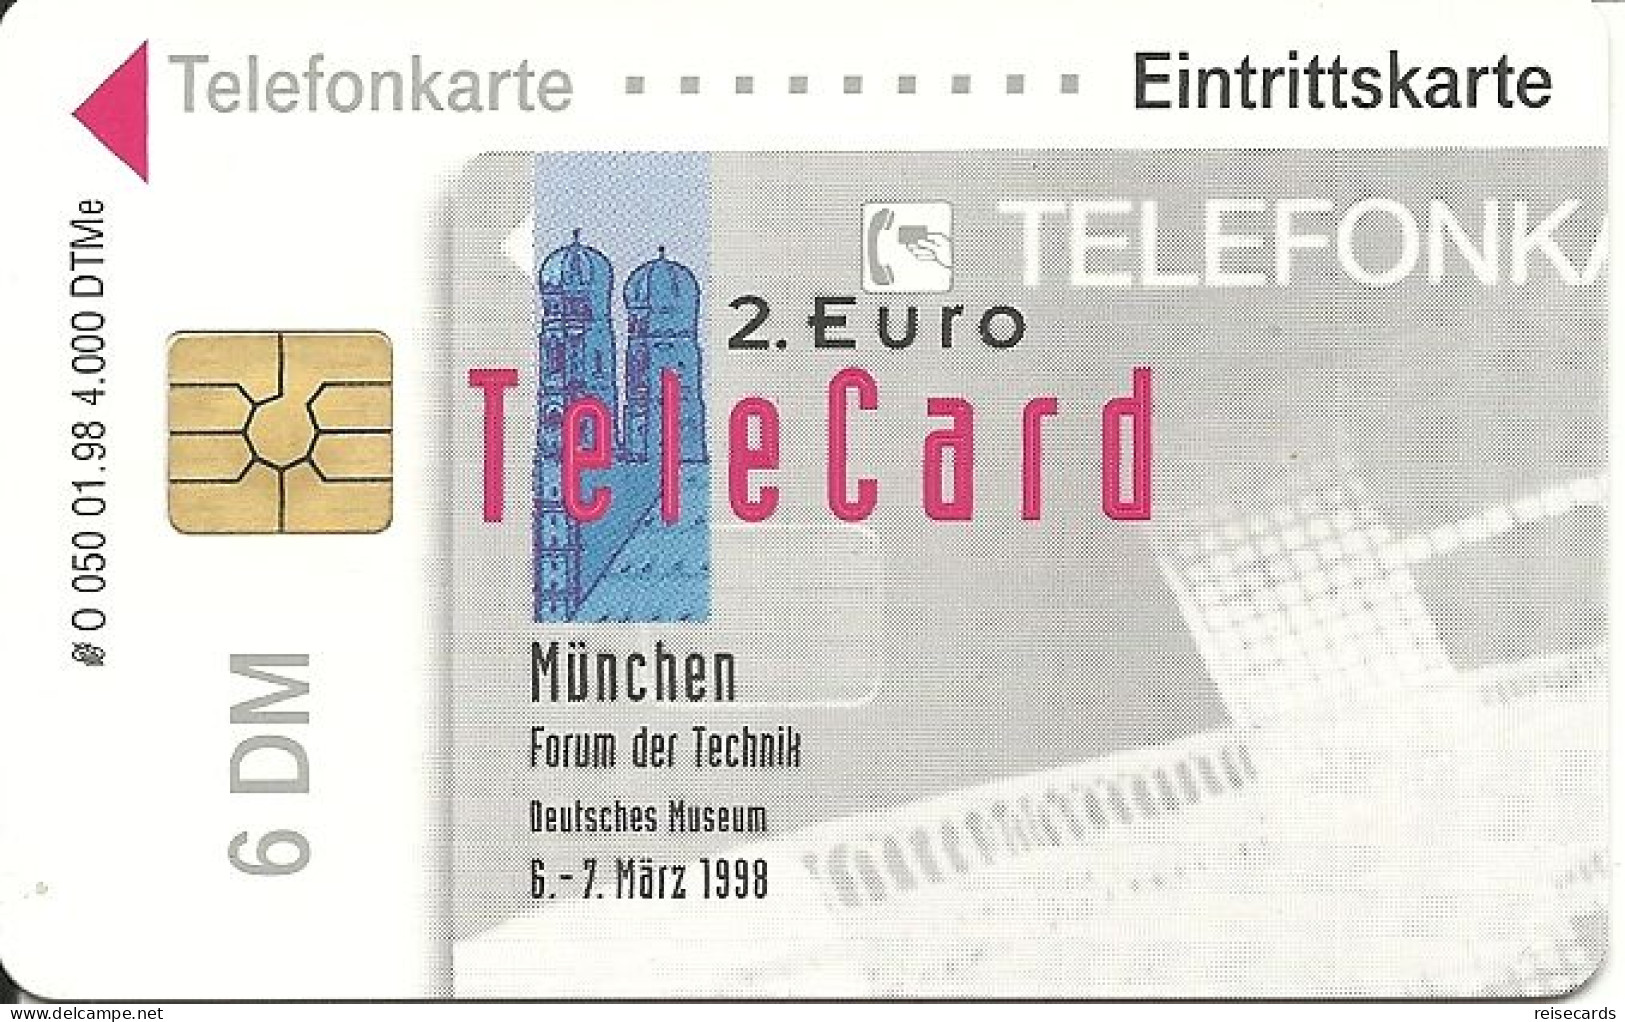 Germany: O 050 01.98 2. Euro-Telecard, Forum Der Technik München 1998. Mint - O-Series: Kundenserie Vom Sammlerservice Ausgeschlossen